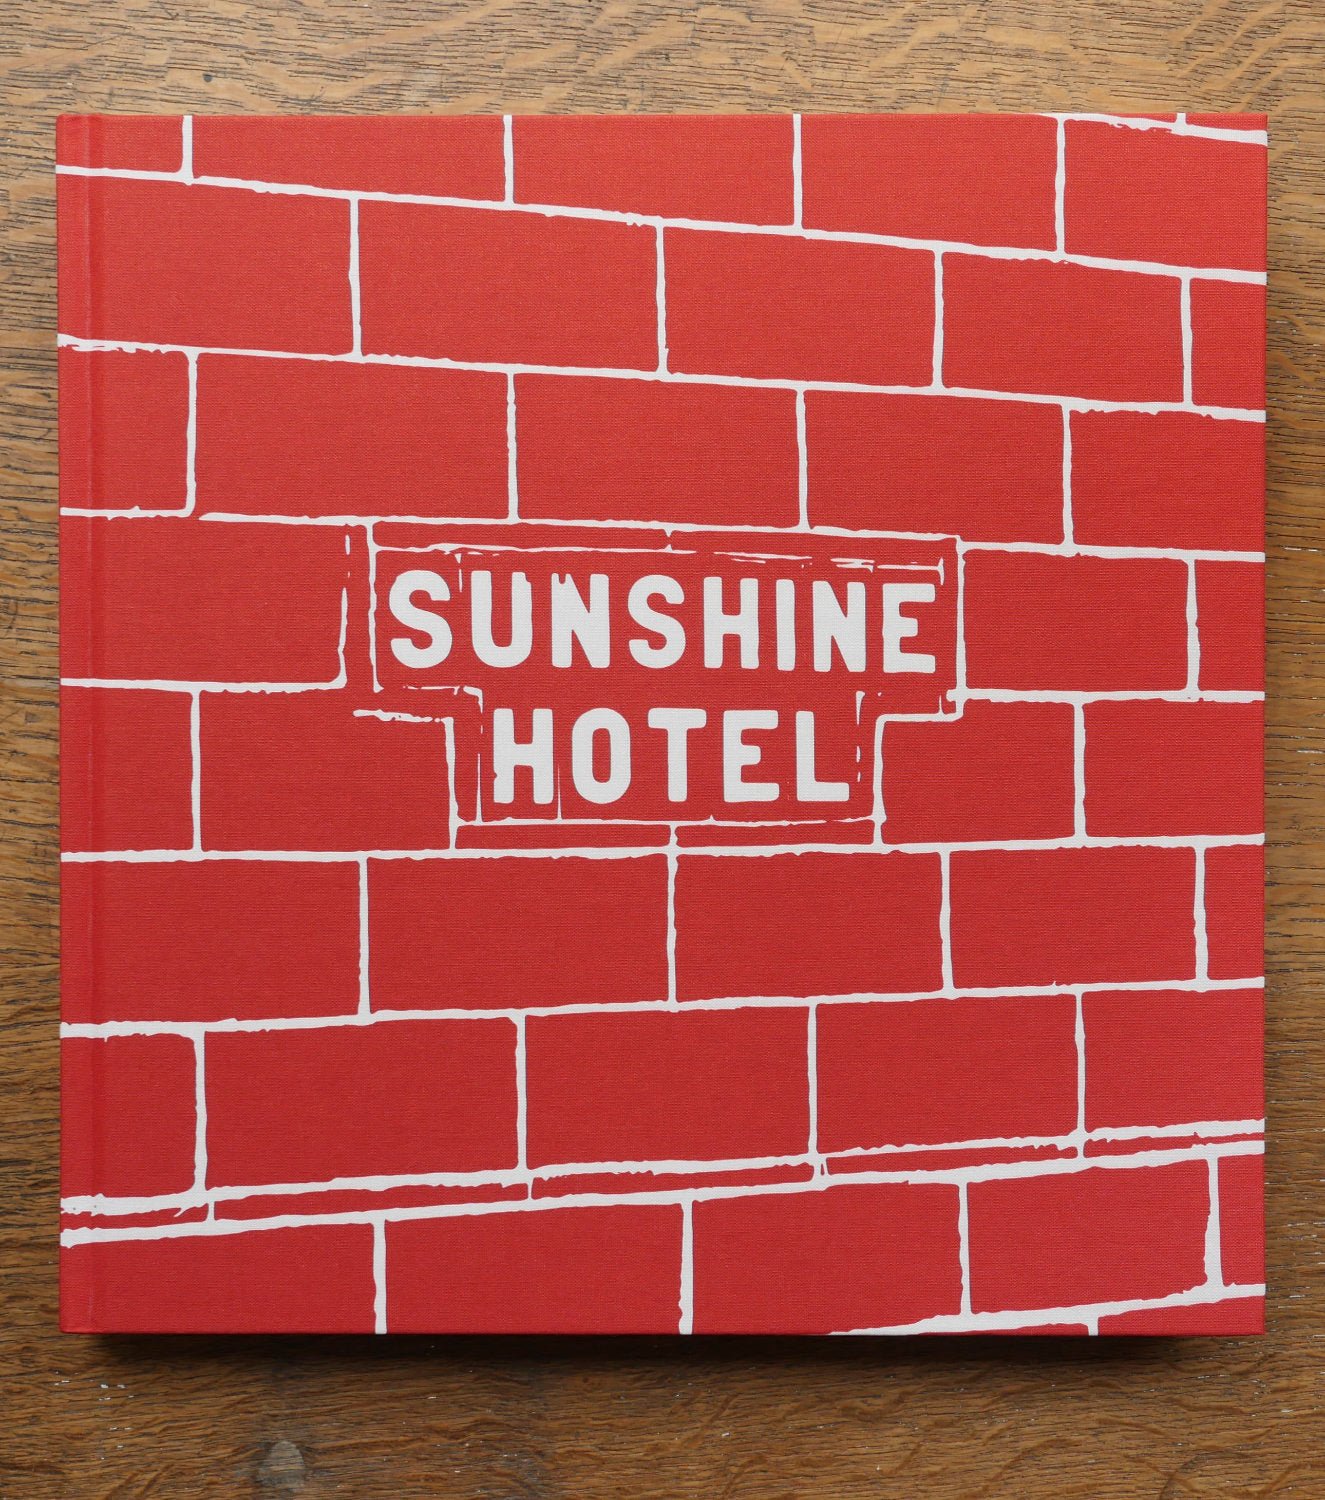 Sunshine Hotel by Mitch Epstein - Tipi bookshop